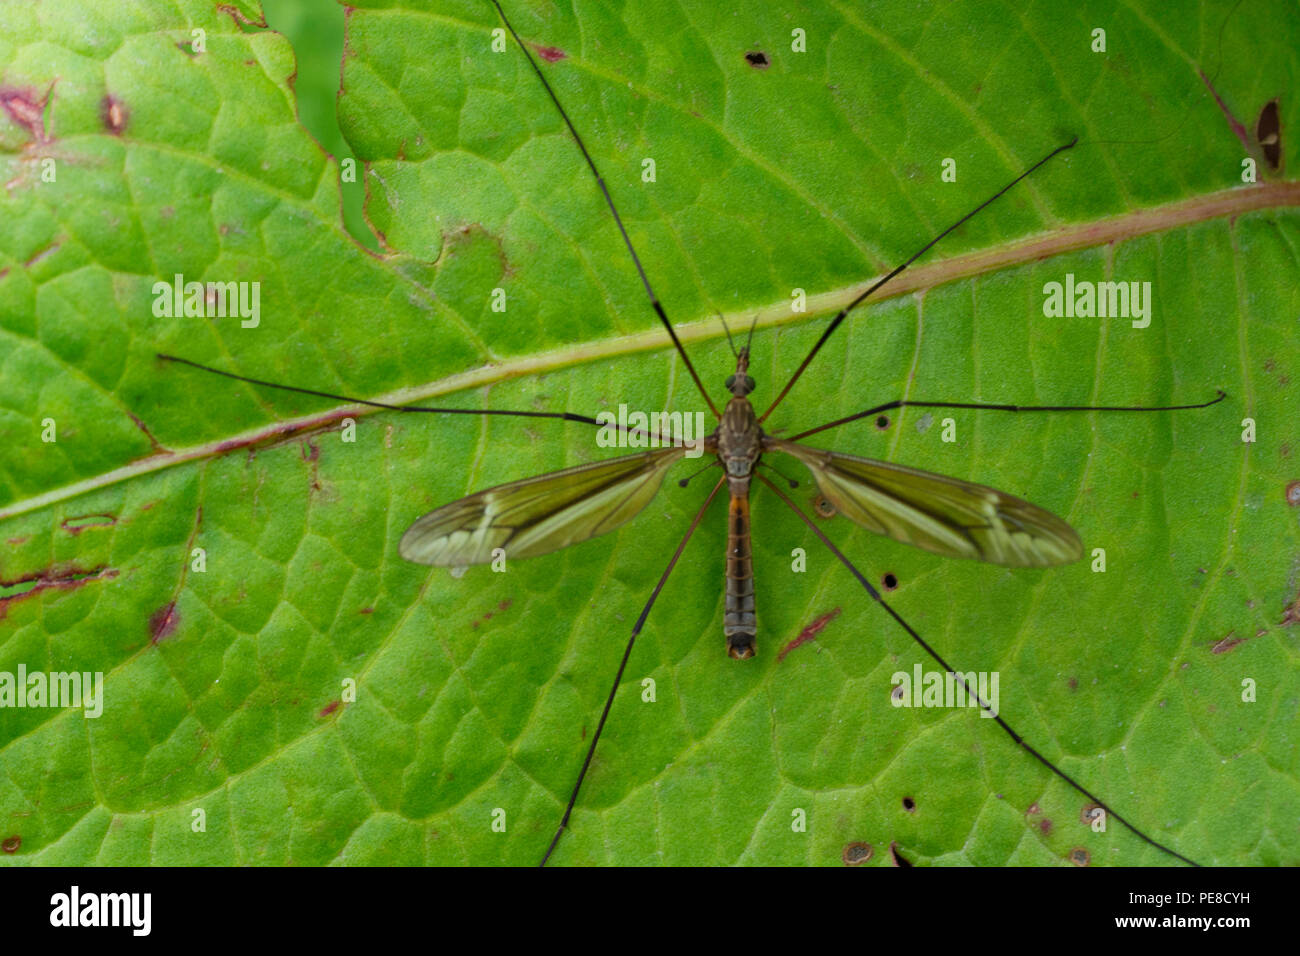 Crane fly, Family Tipulidae, Uttarakhand, India Stock Photo